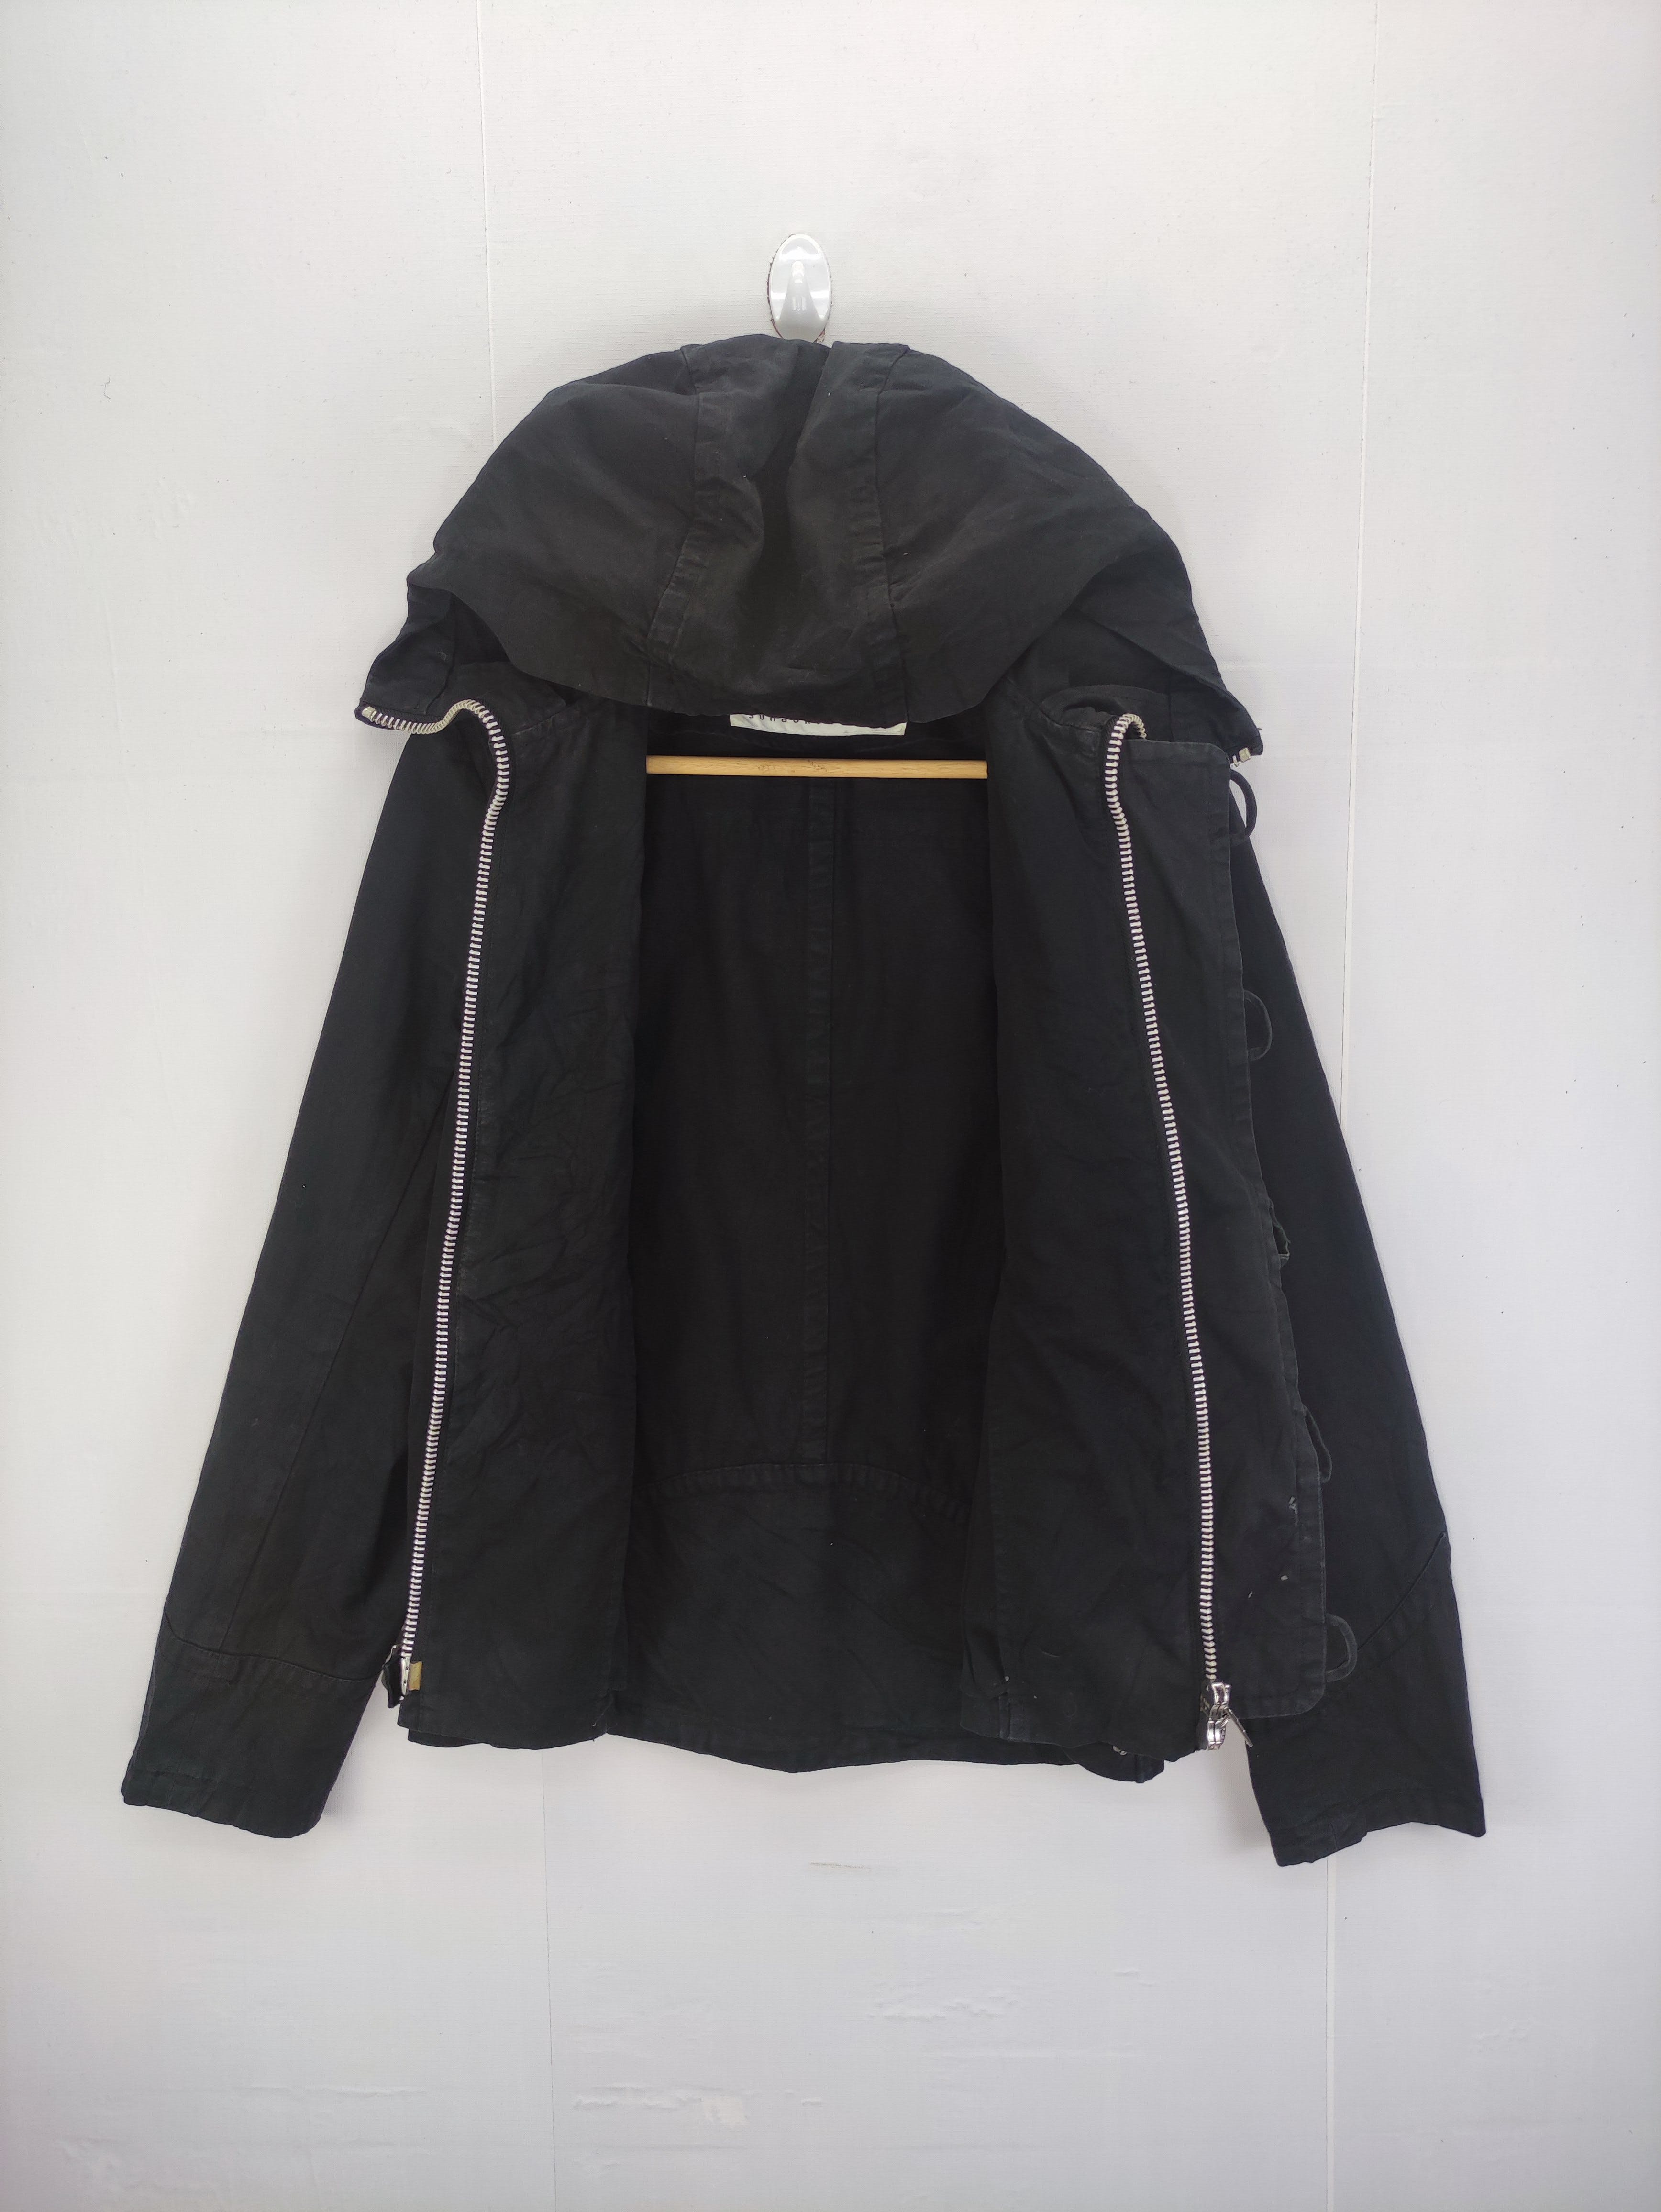 Vintage Sunaokuwahara Jacket Hoodie Zipper - 4